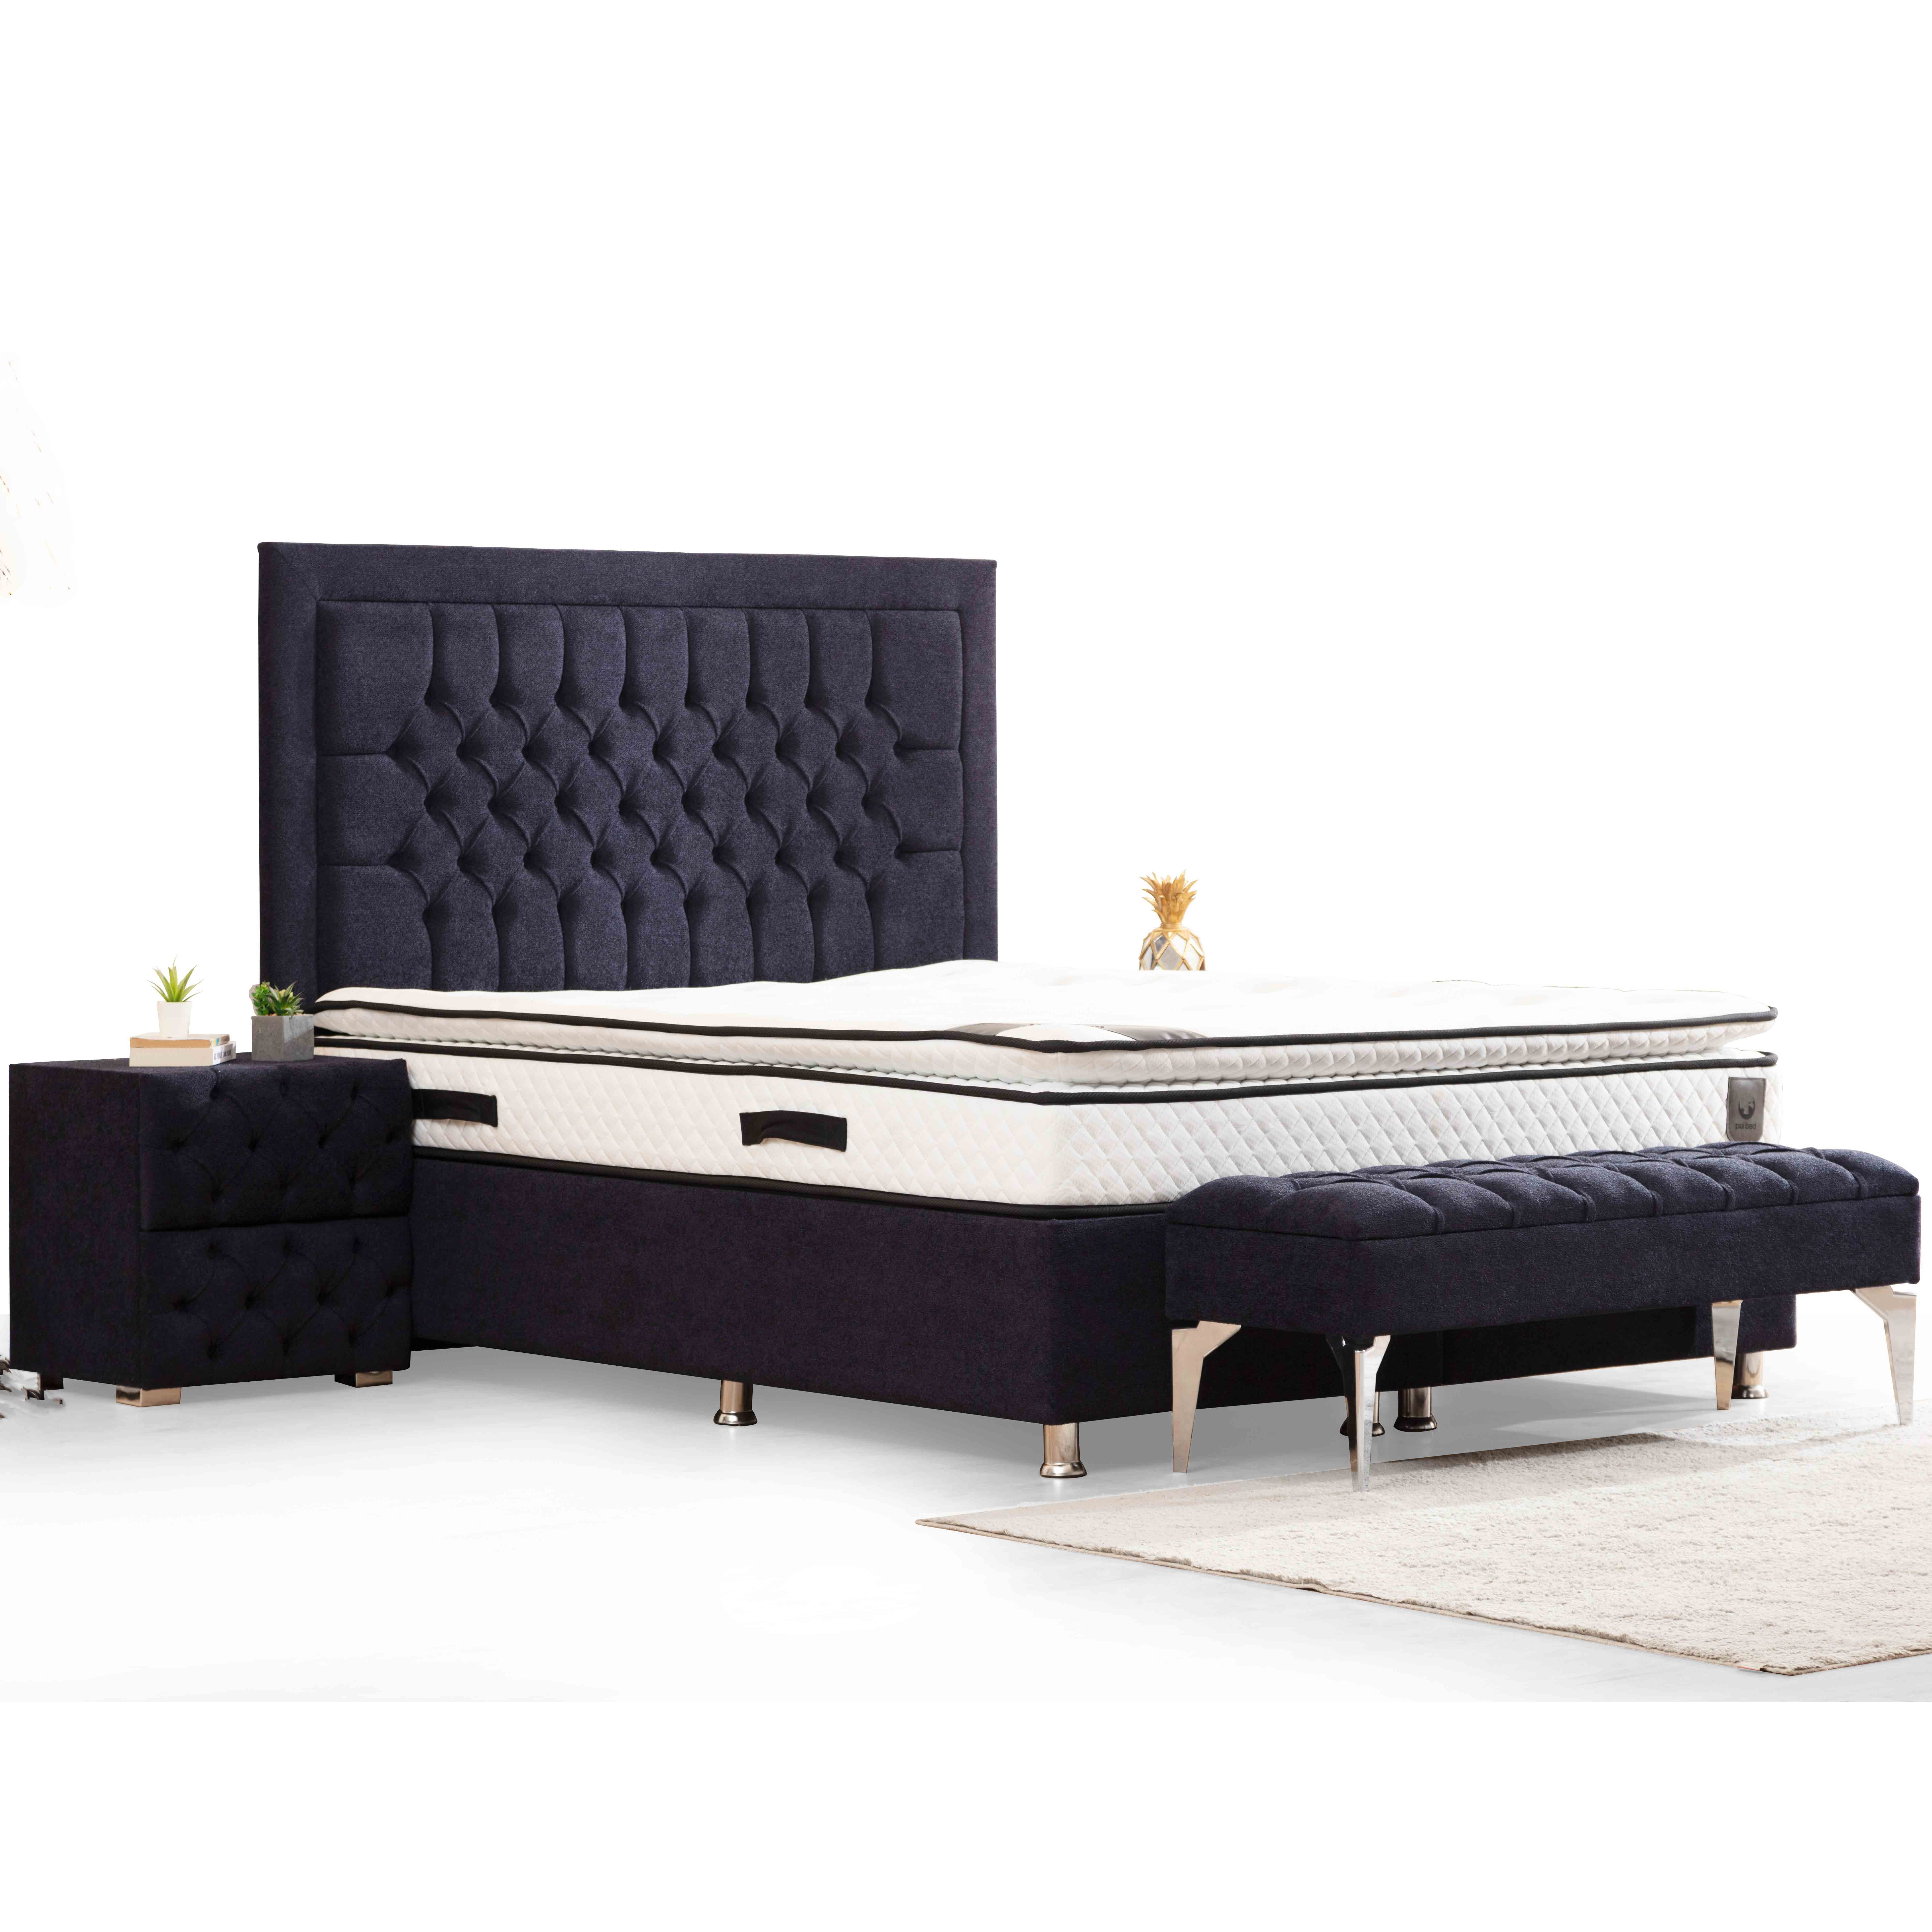 Astom Bed With Storage 160x200 cm